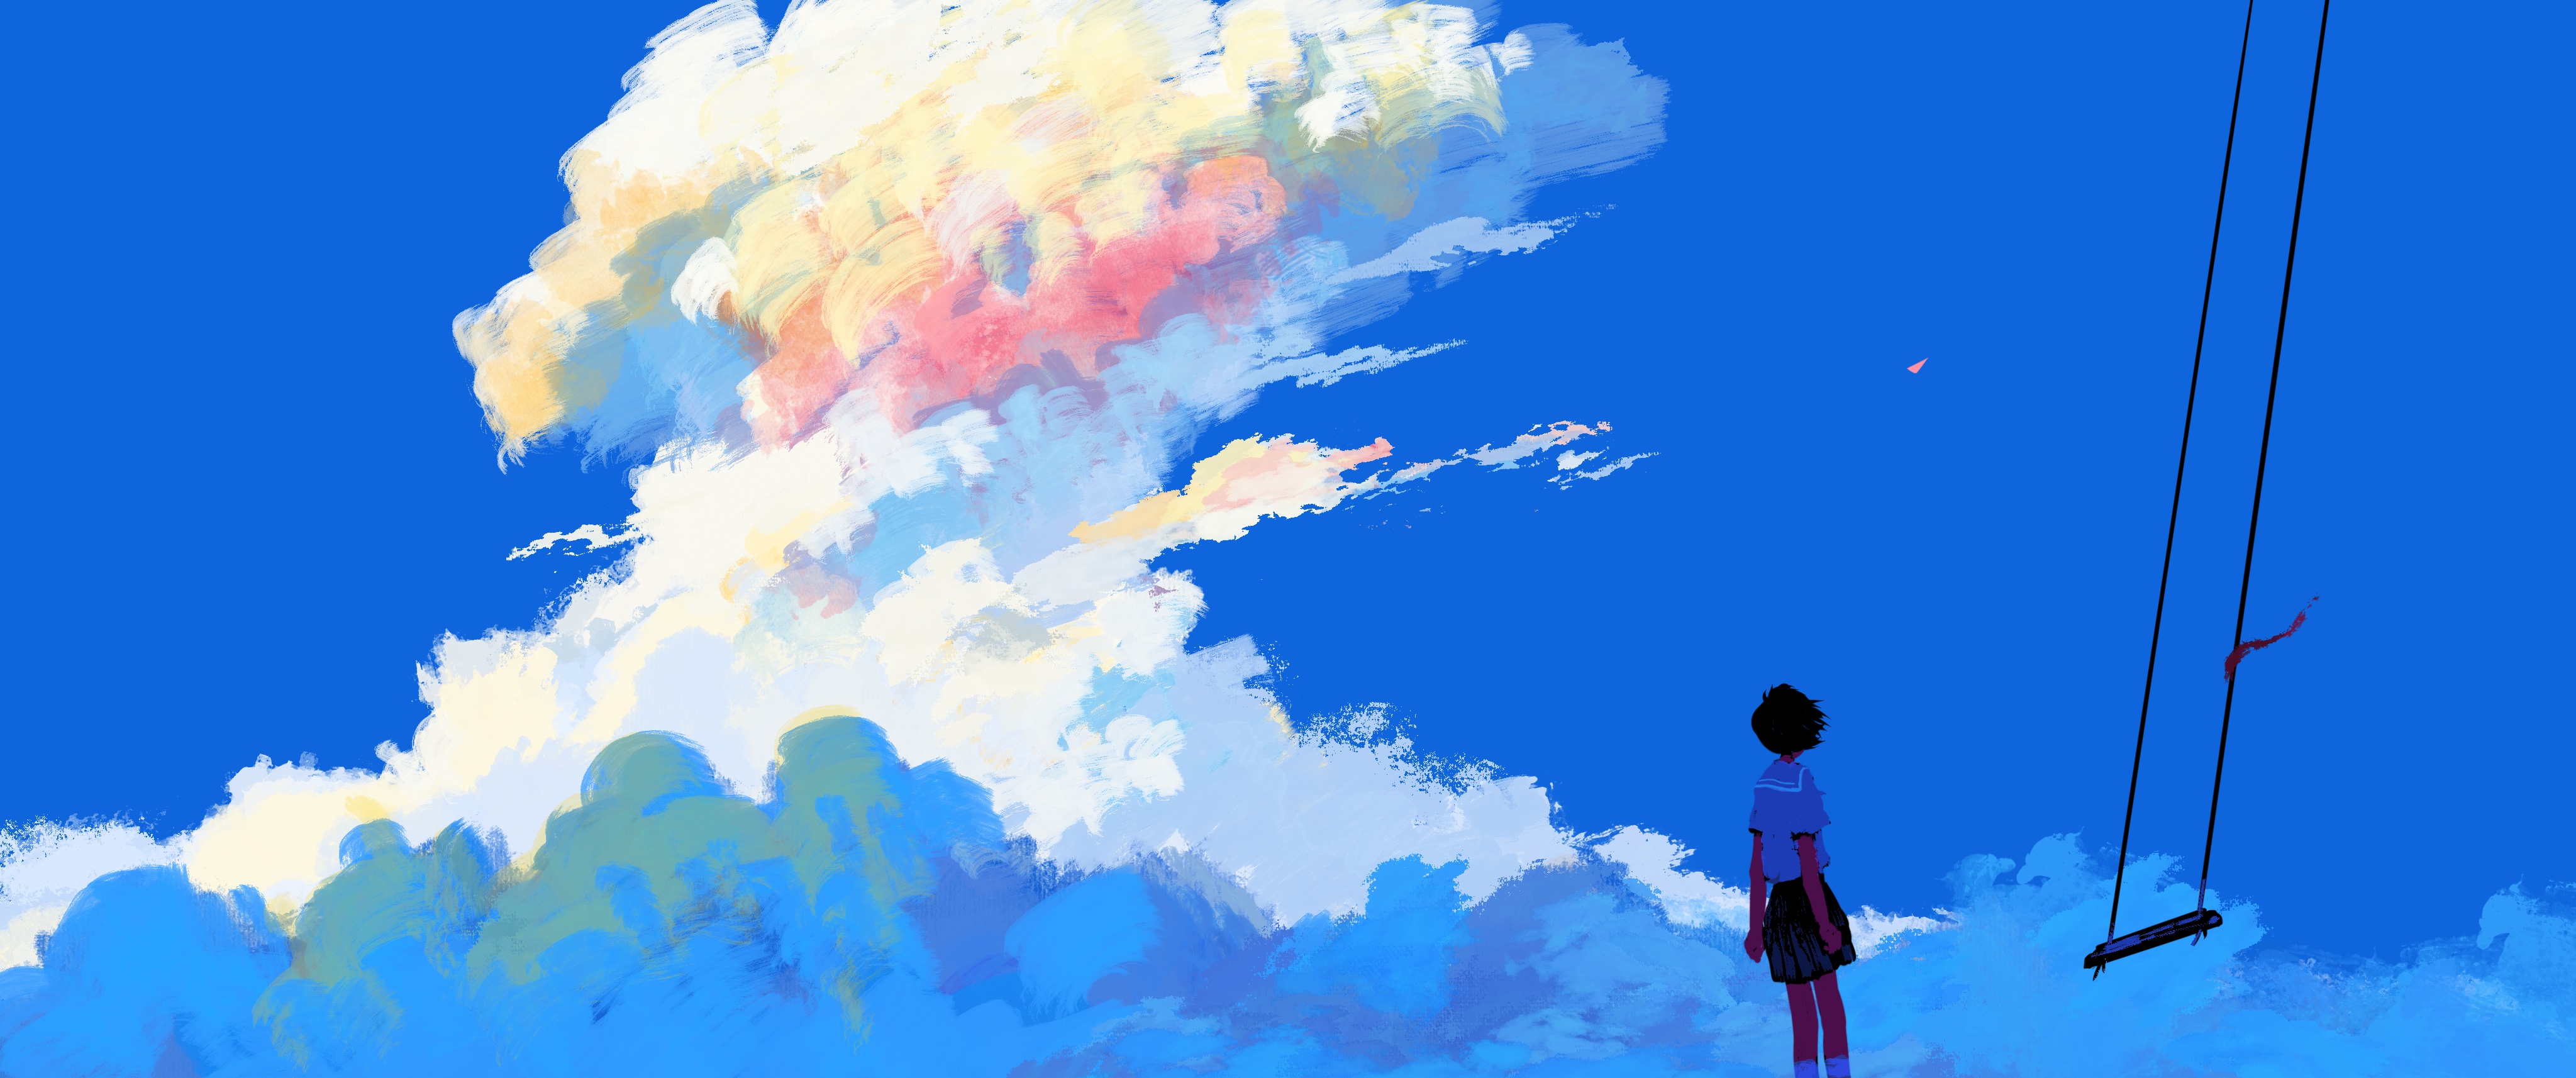 General 4096x1714 bangjoy digital painting clouds peaceful looking away schoolgirl school uniform swings sky standing hair blowing in the wind digital art